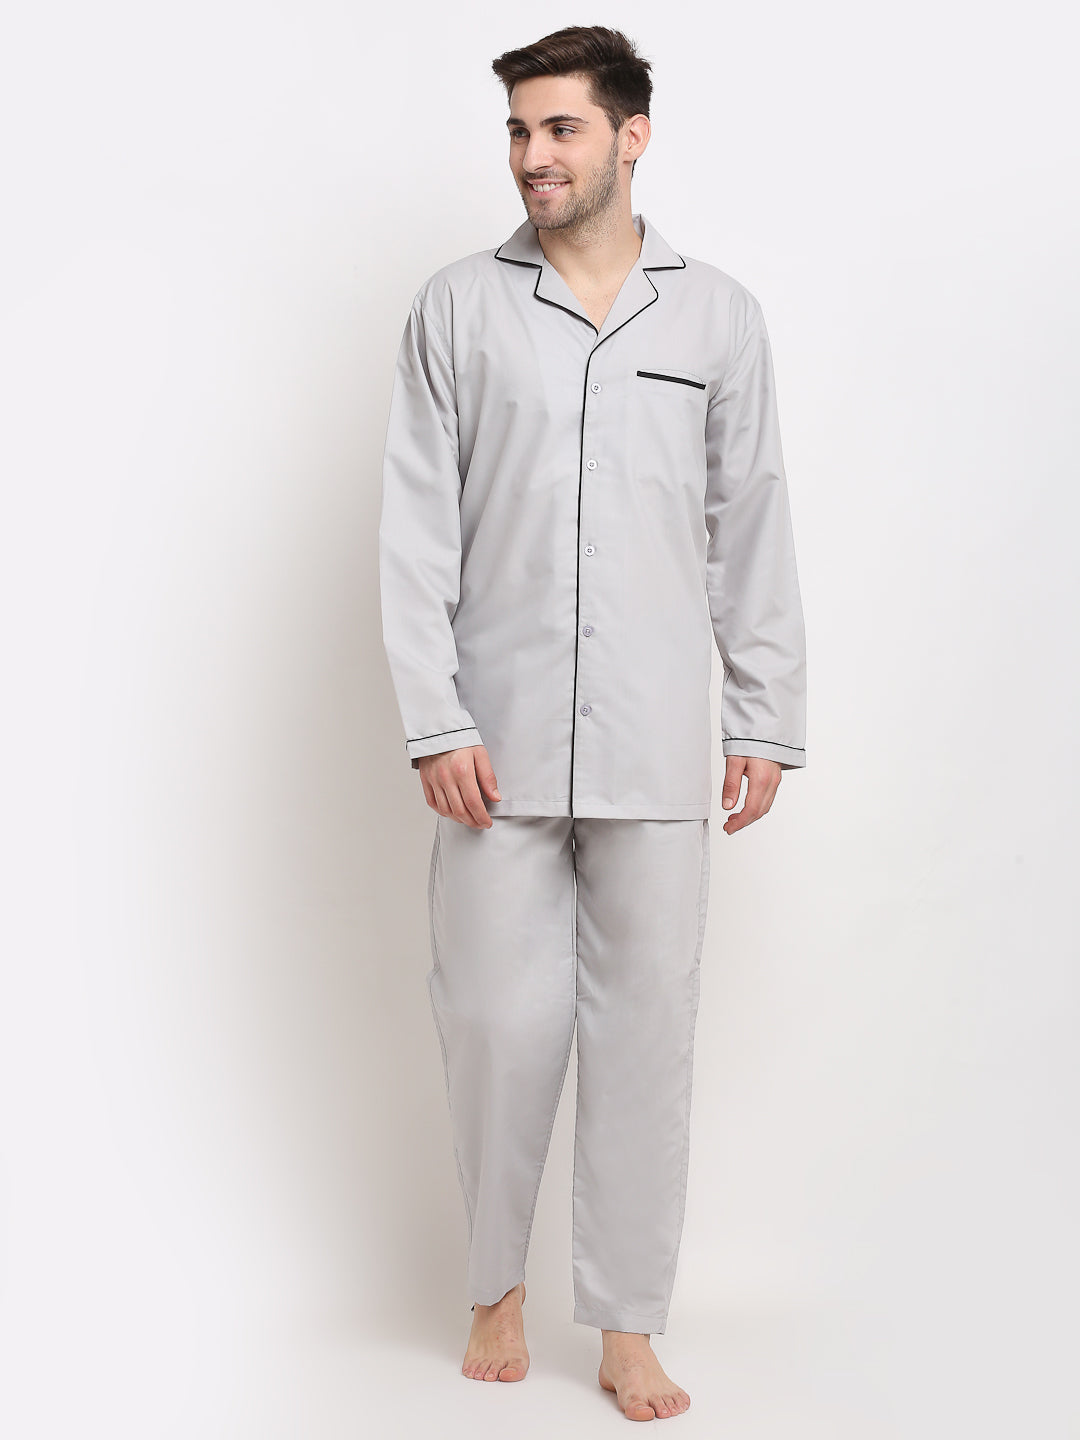 Men's Steel-Grey Cotton Solid Night Suits ( GNS 003Steel-Grey ) - Jainish